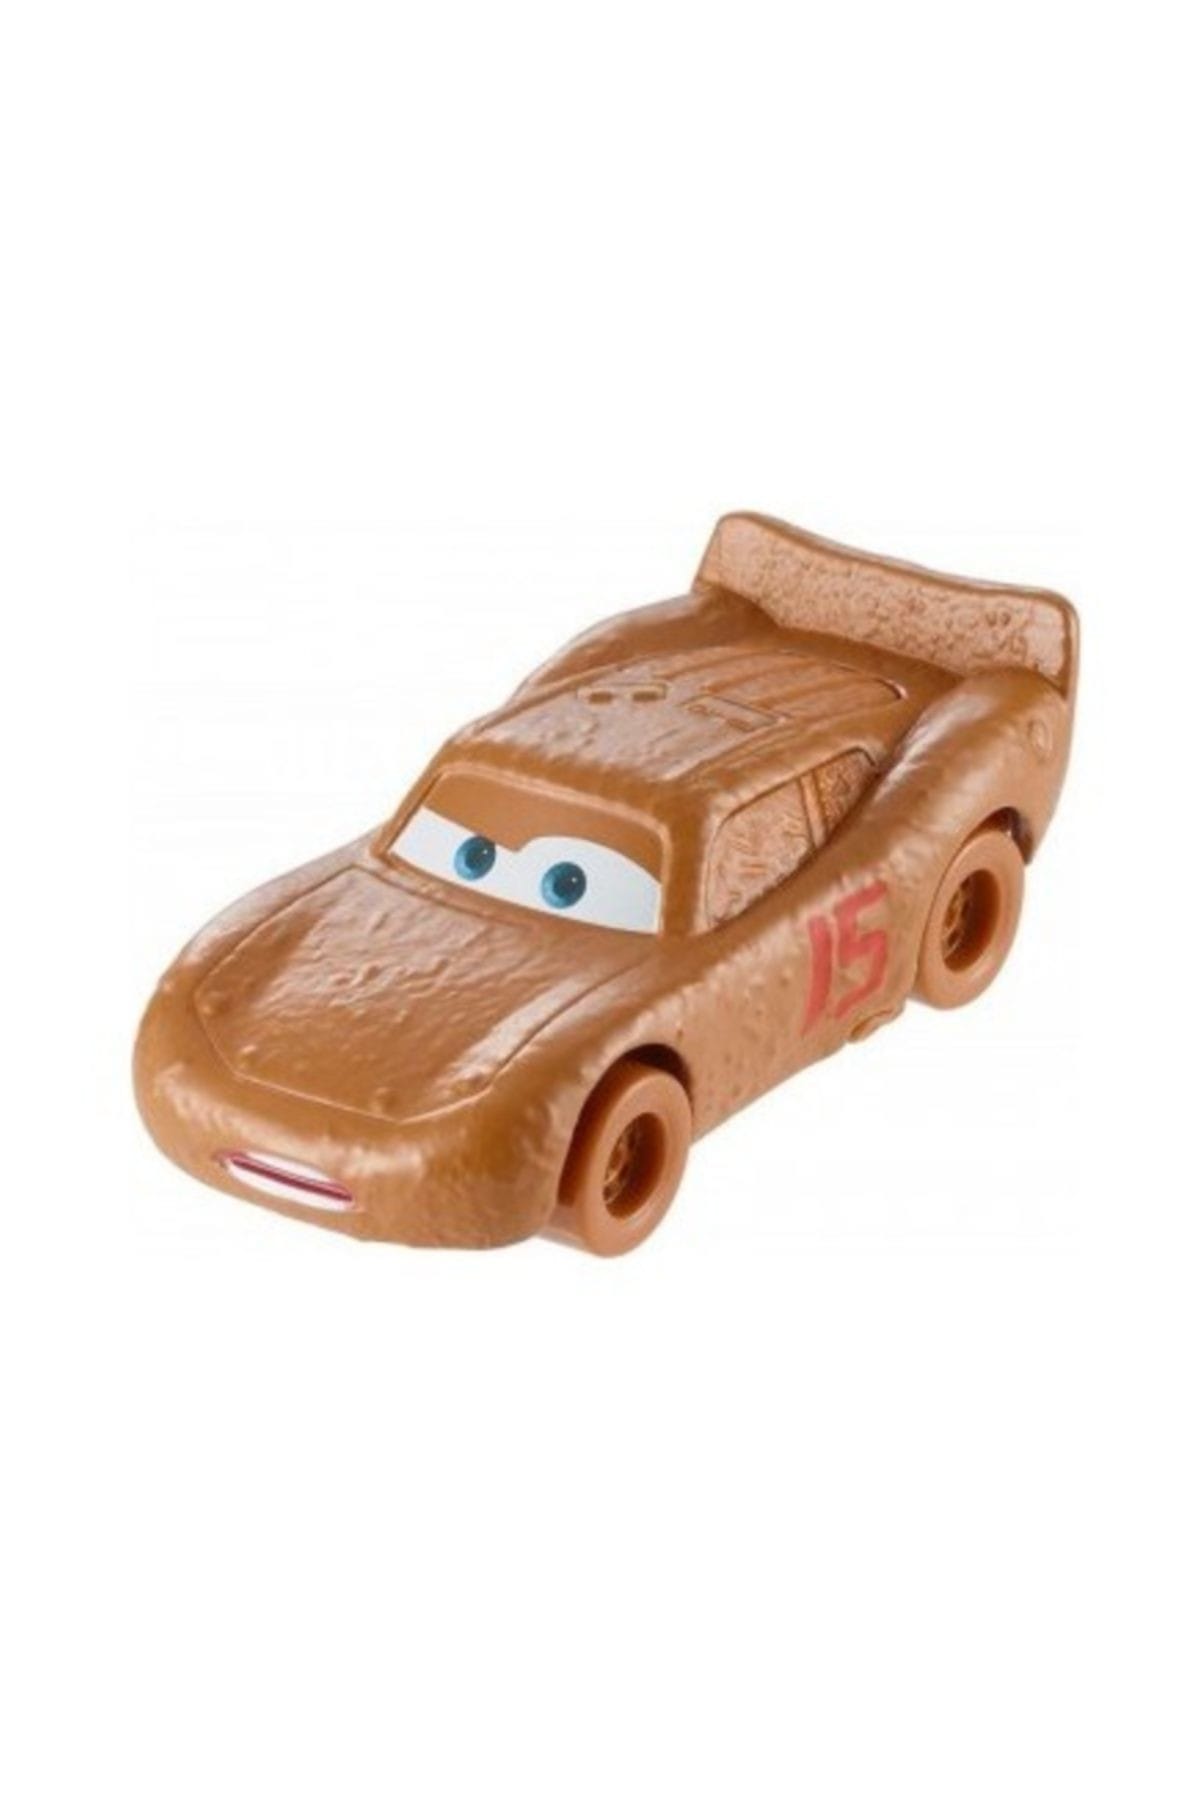 DİSNEY CARS Mattel Disney Cars 3 Şimşek Mcqueen As Chester Whipplefilter